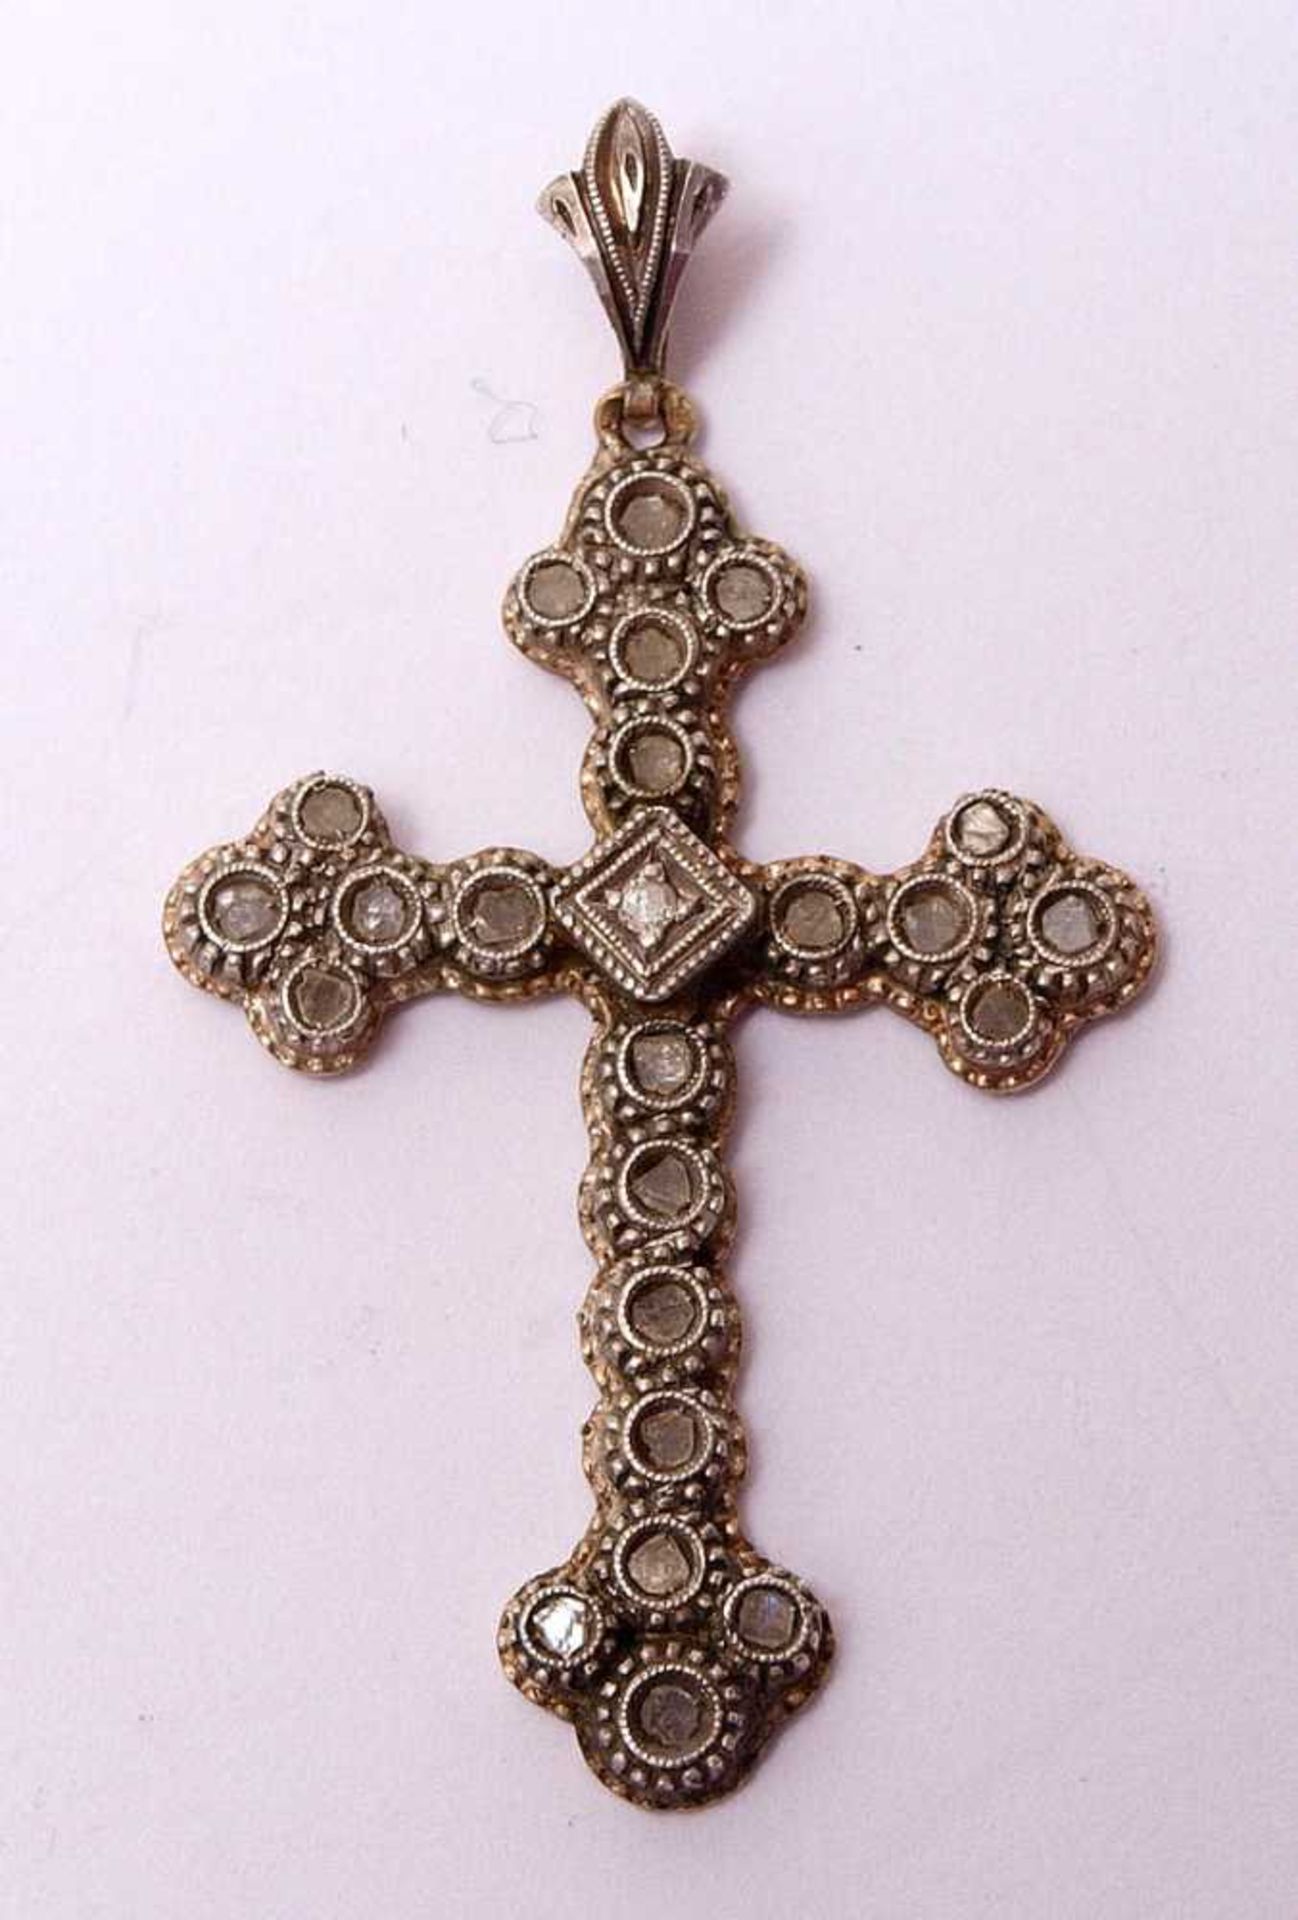 Kreuzanhänger, 20er/30er JahreWG 14kt, ausgefasst mit Rosendiamanten. L.4,5cm.